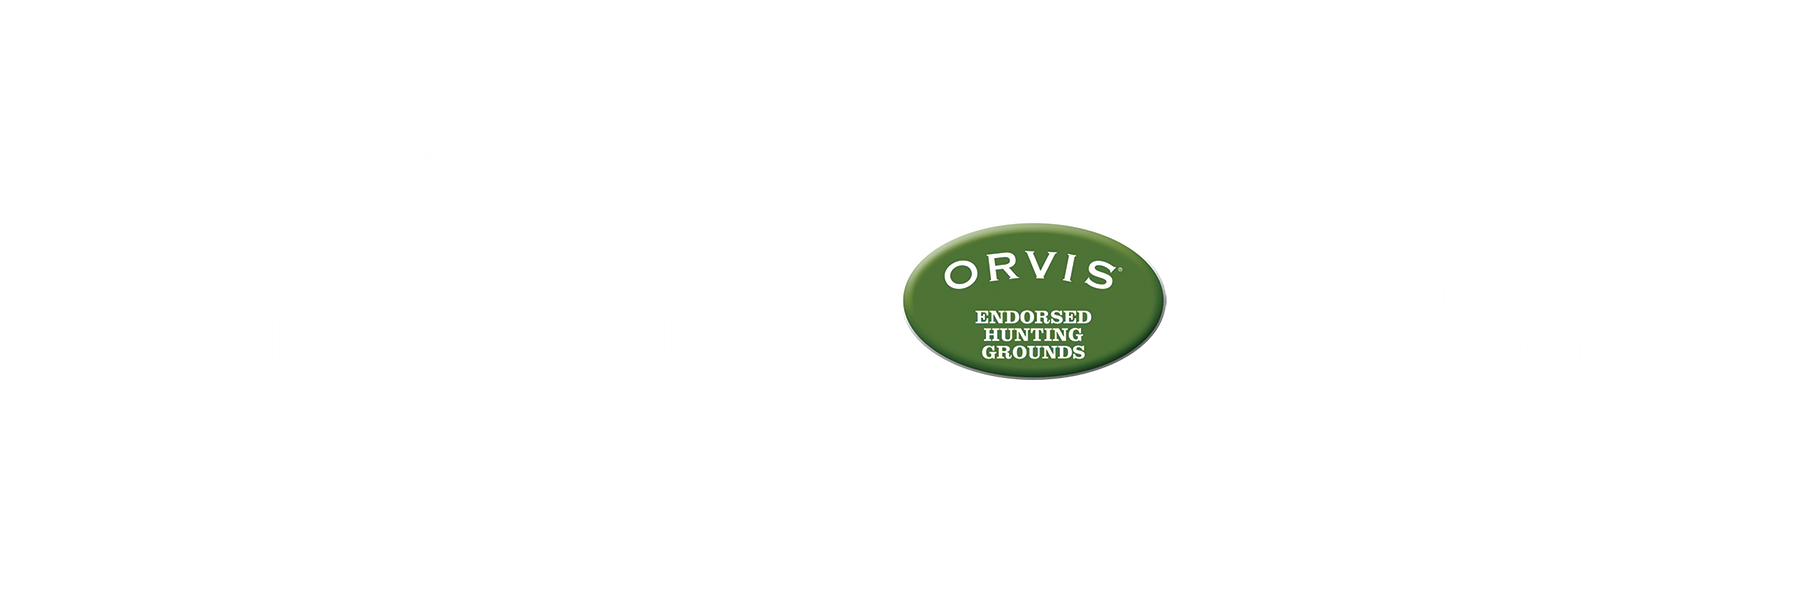 Milford Hills Hunt Club